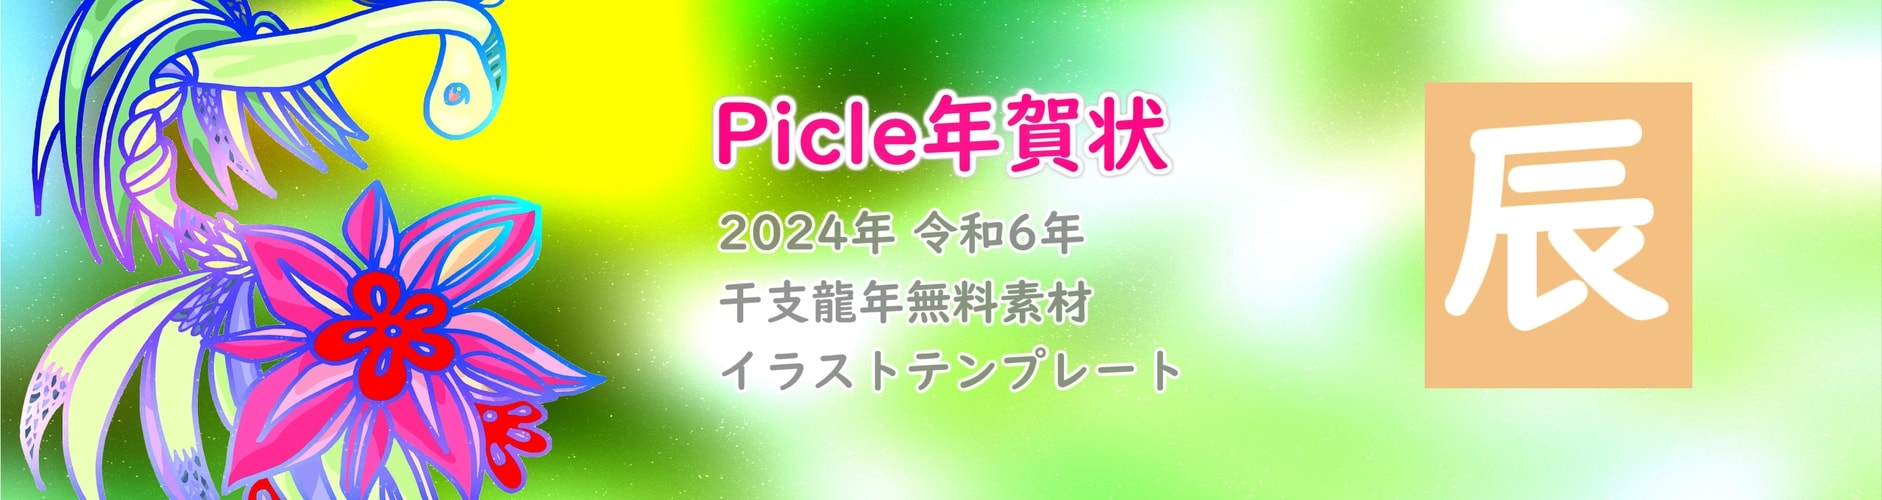 Picle年賀状 無料素材2022年(令和4年)干支とら虎寅年絵オリジナルイラストテンプレートカード画像印刷プリントフリーダウンロード